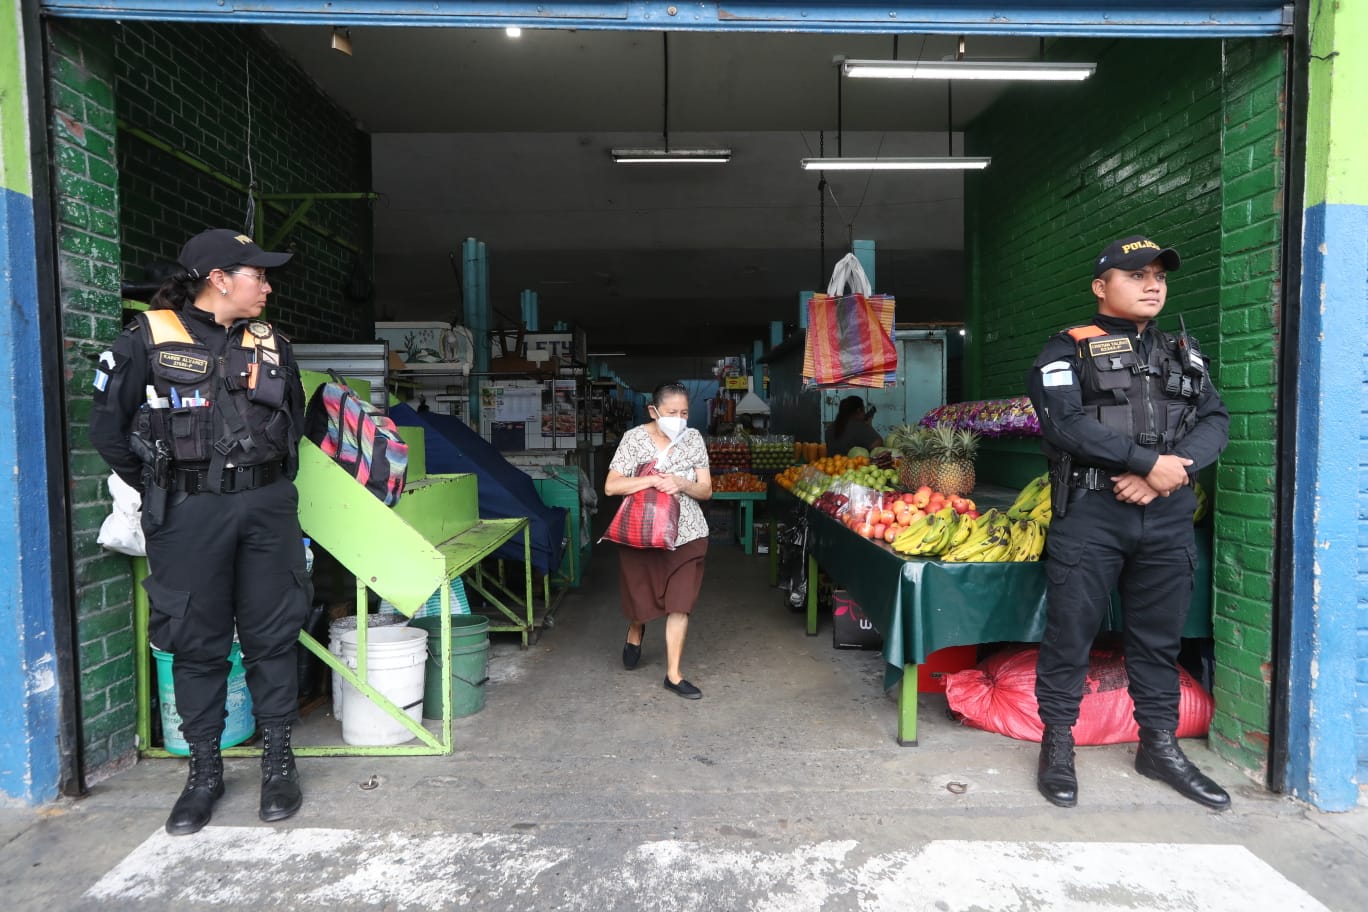 El mercado La Parroquia, zona 6, fue cerrado el 22 de marzo pasado, debido a extorsiones. Un día después abrieron con más apoyo de la Policía Nacional Civil. (Foto Prensa Libre: Roberto López)